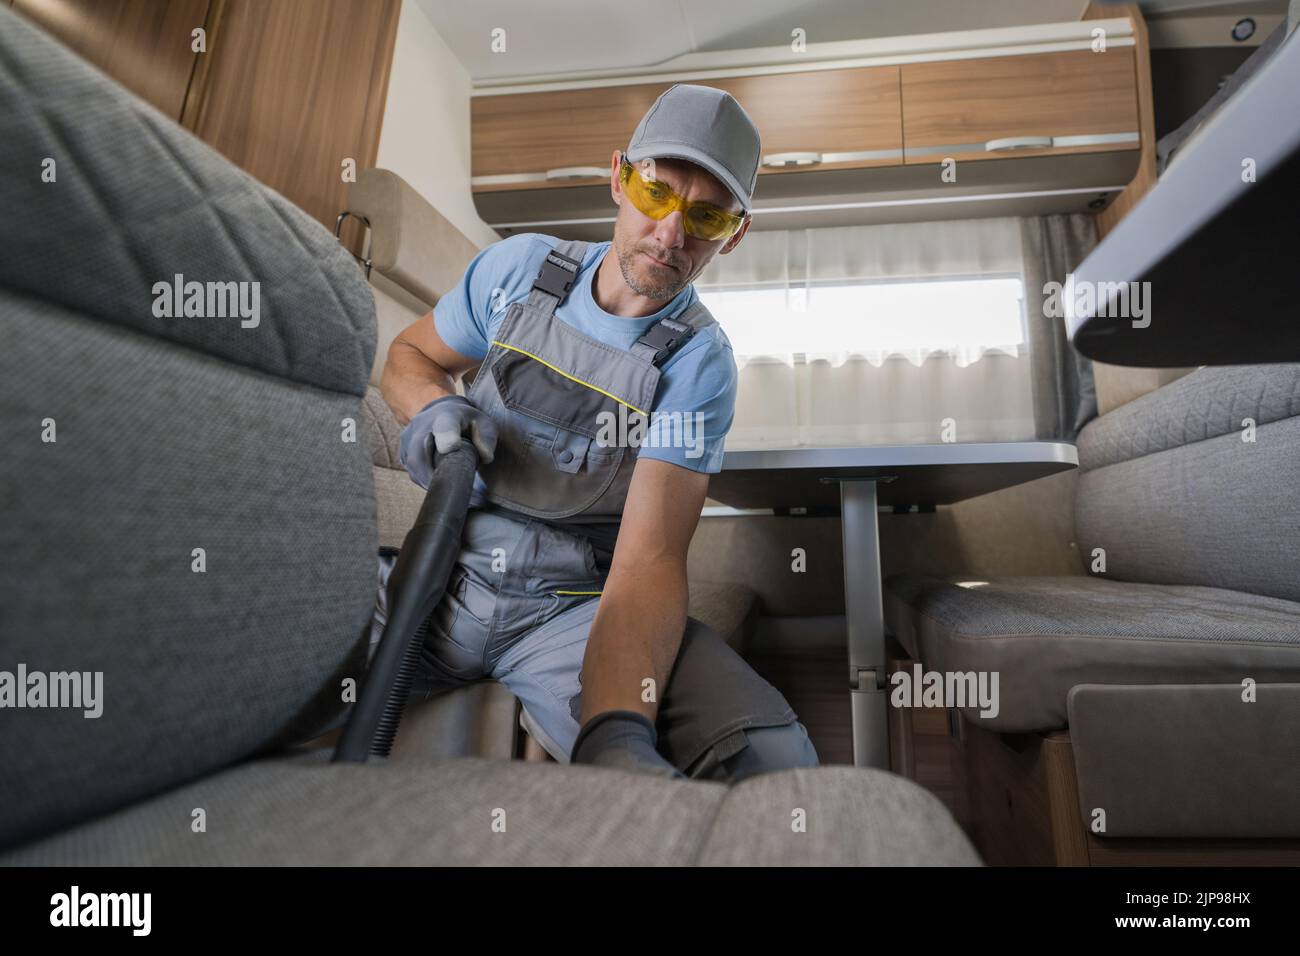 Lavoratore caucasico maschio prendersi cura di Camper Van interni pulendo il mobili con aspirapolvere. Preparativi per la stagione in campeggio. Veicoli ricreativi Foto Stock